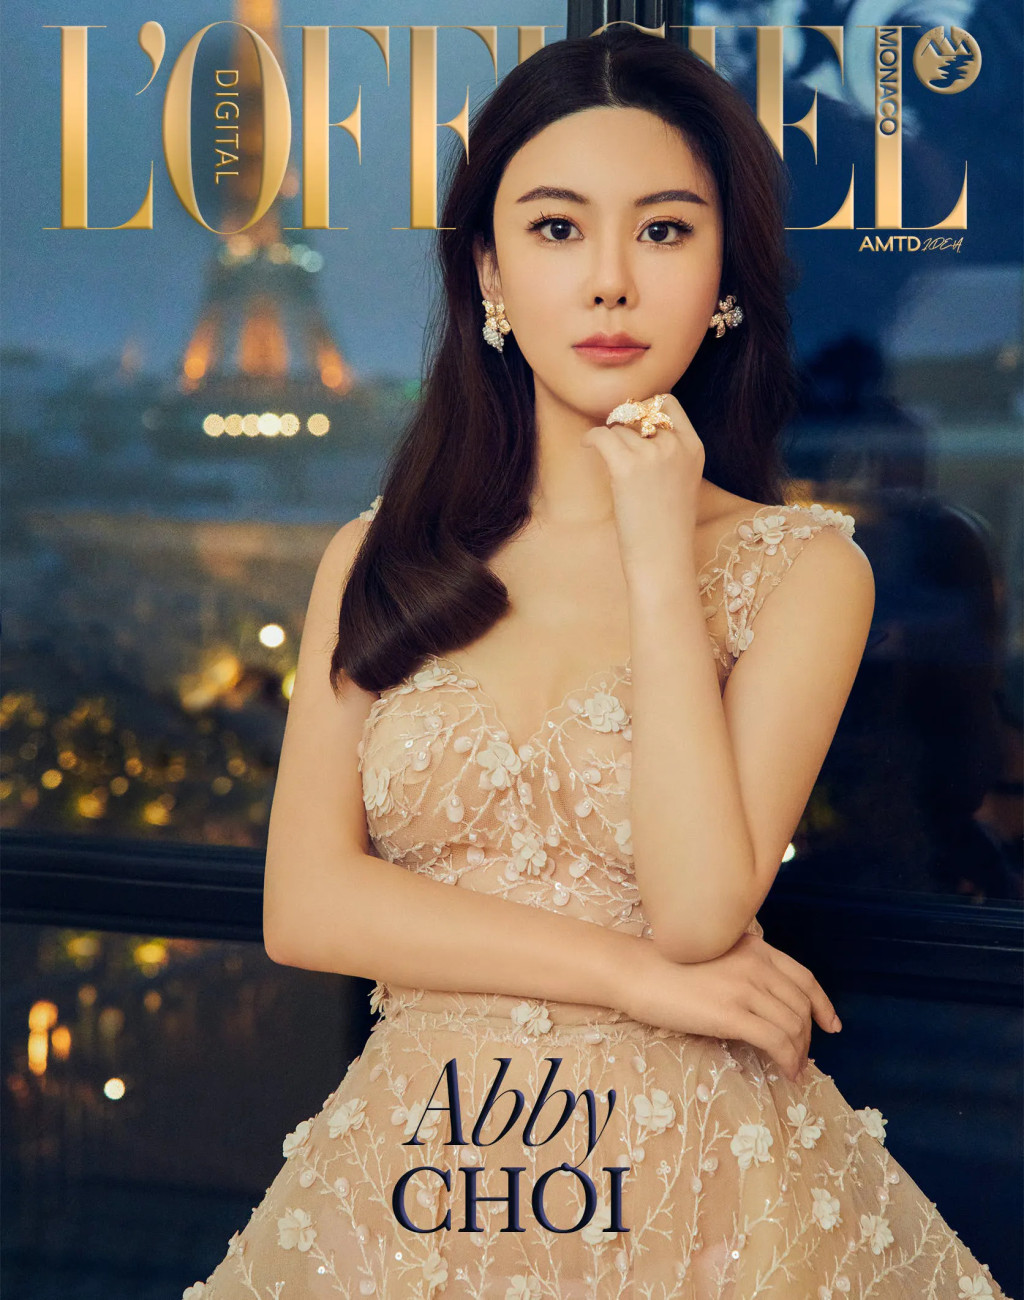 蔡天凤登上国际杂志封面。